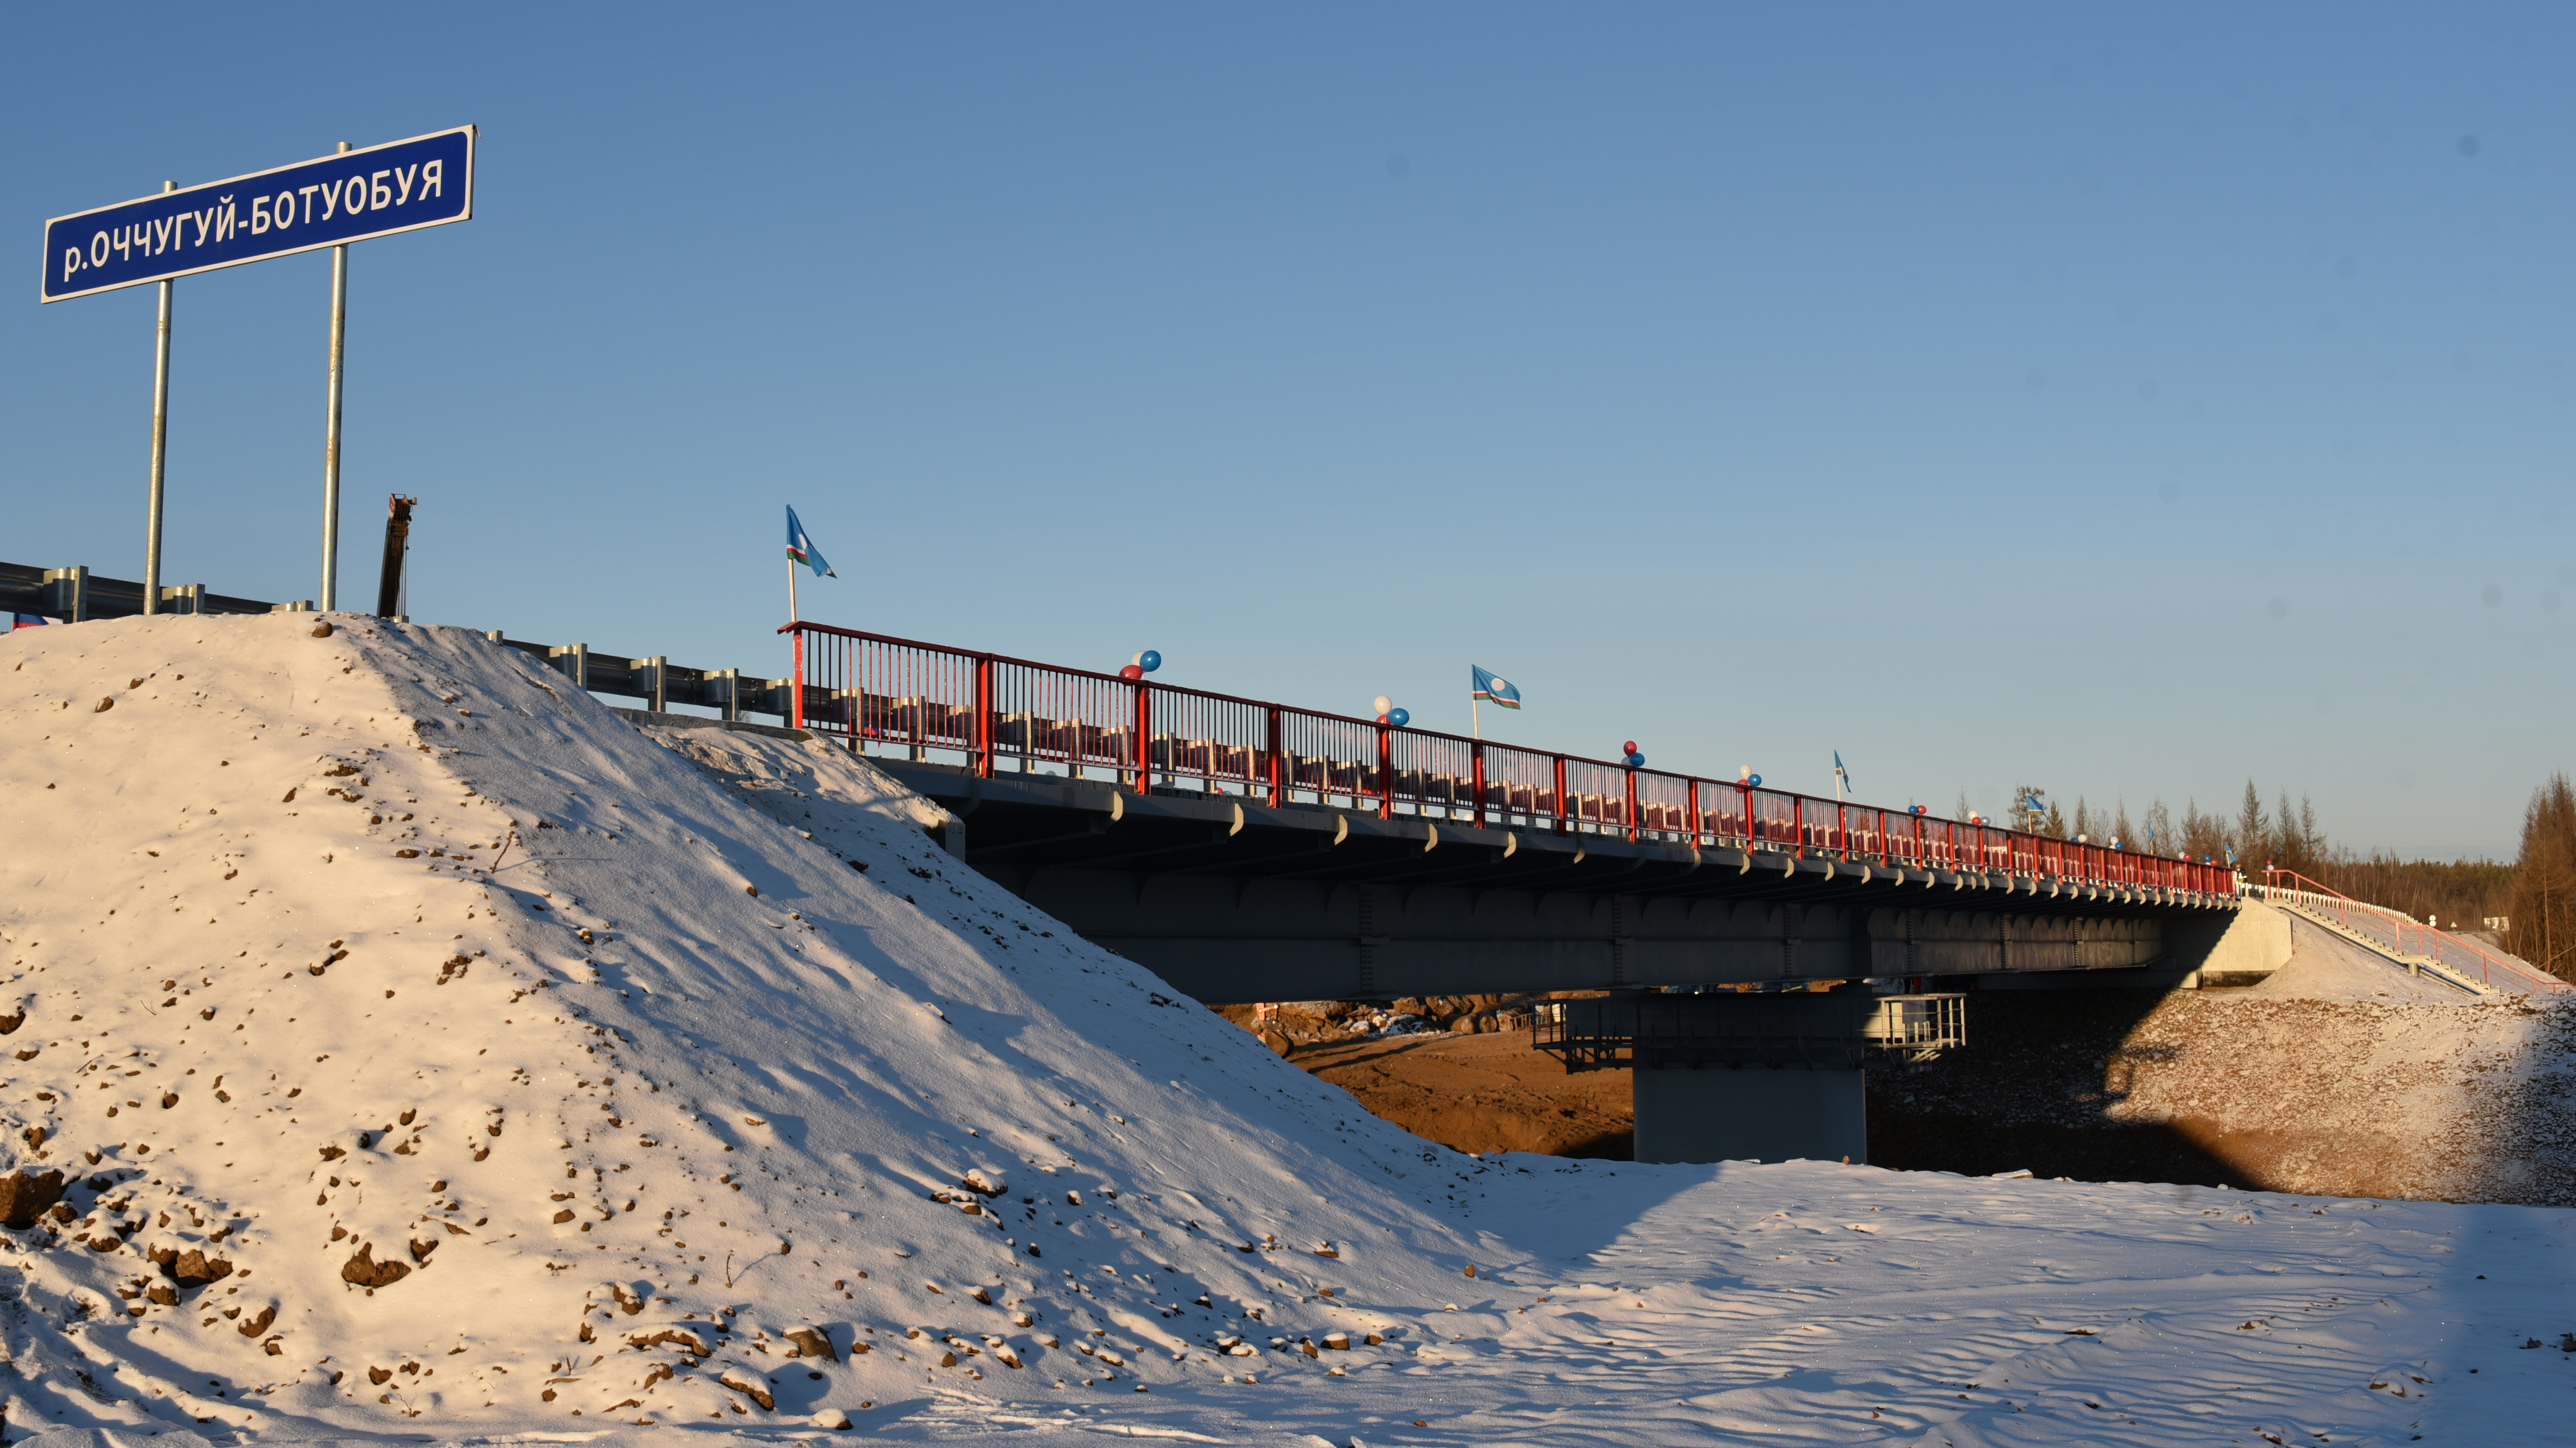 В Республике Саха (Якутия) на трассе А-331 «Вилюй» капитально отремонтирован мост через р. Оччугуй-Ботуобуя